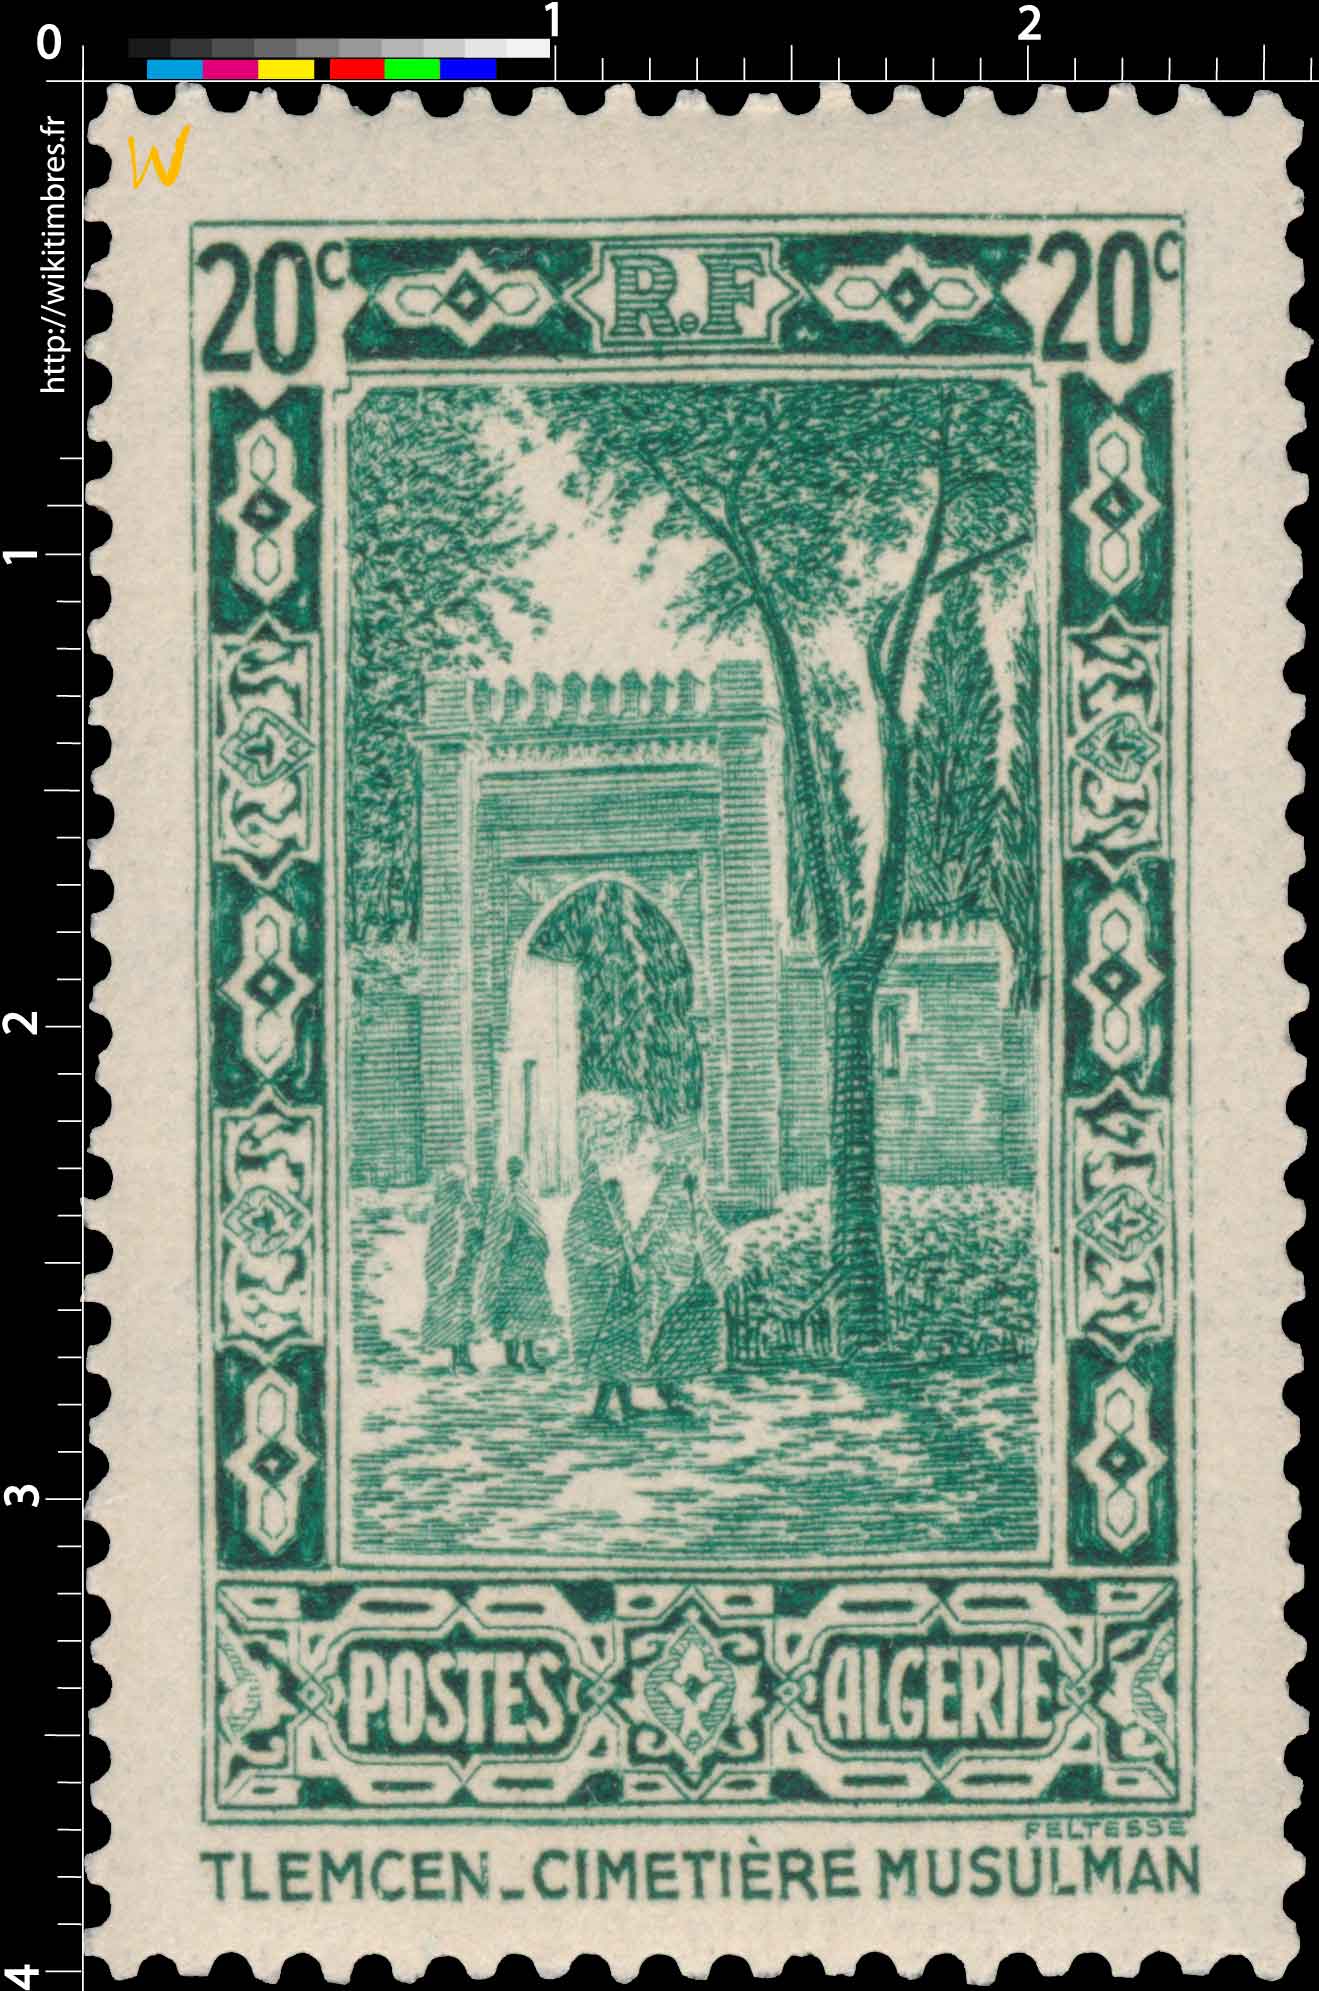 Algérie - Tlemcen - Cimetière musulman